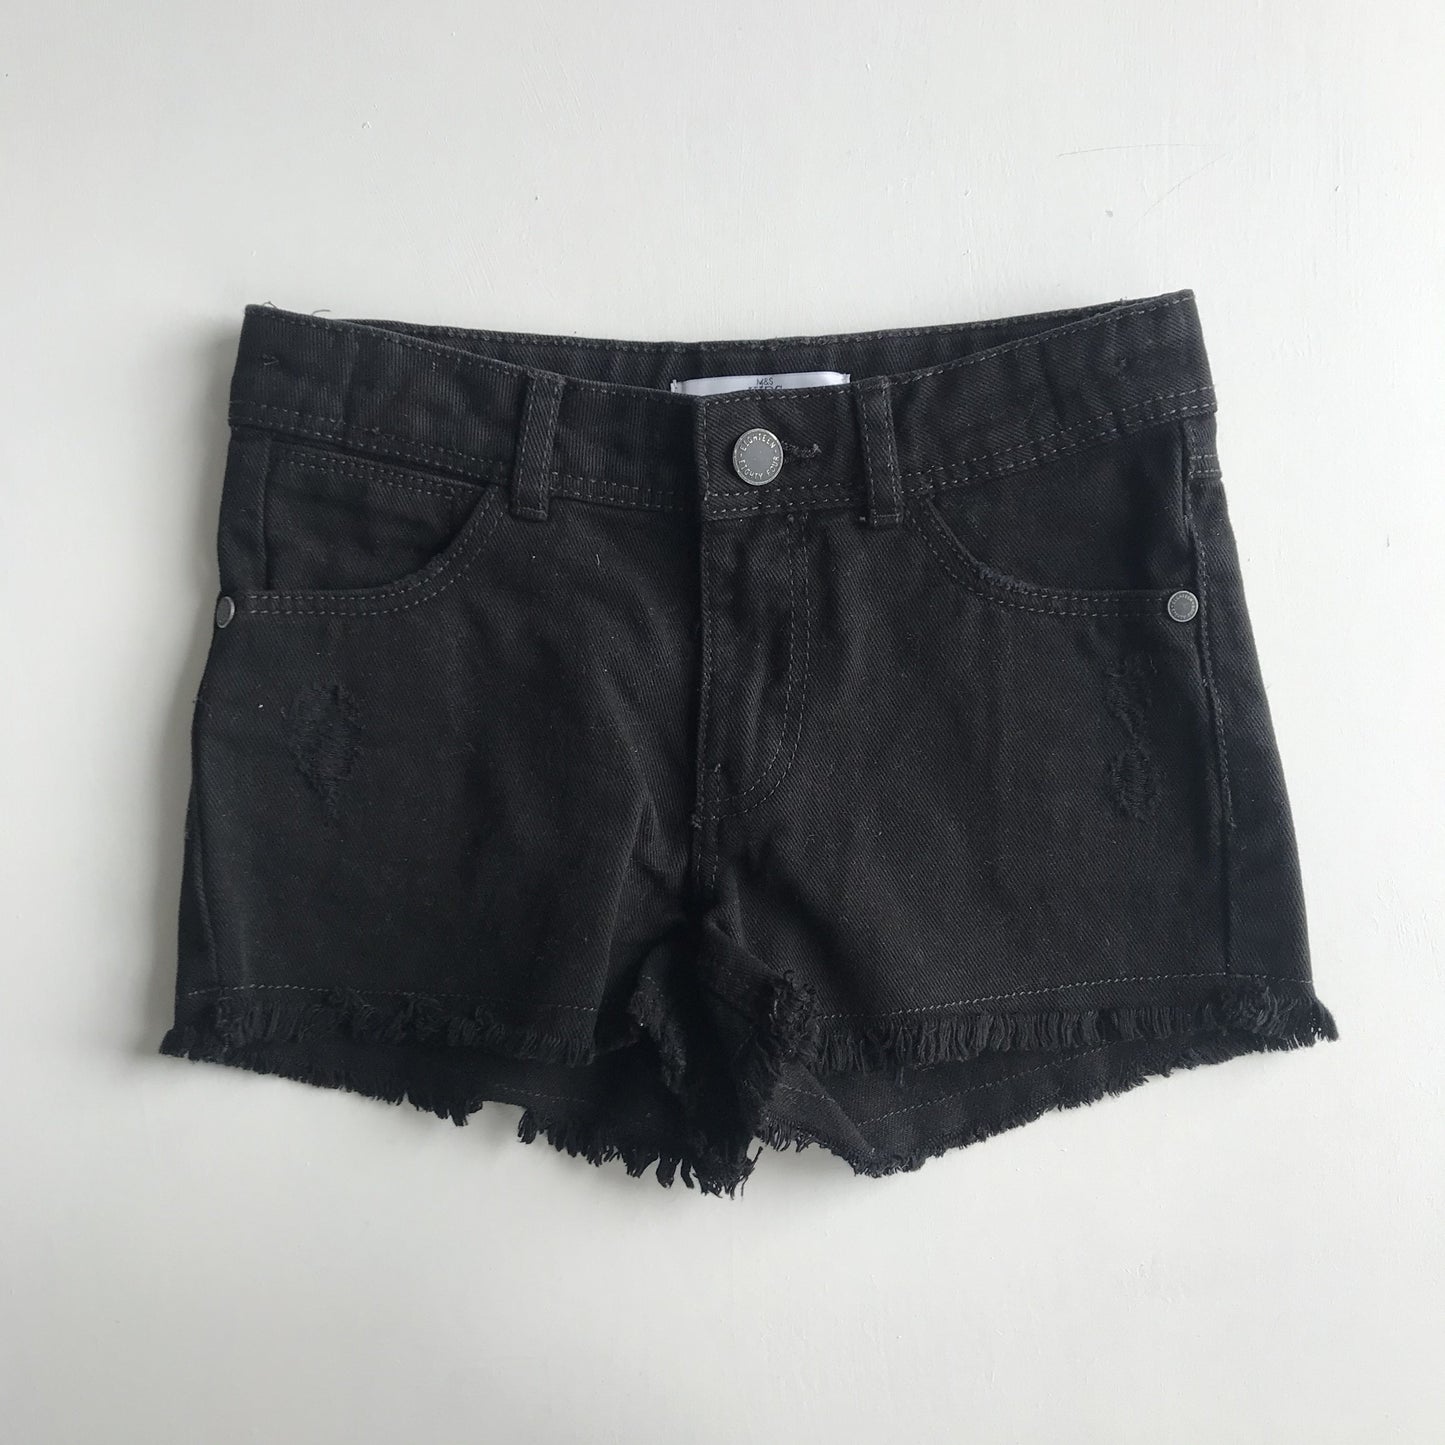 Shorts - Black Denim - Age 5